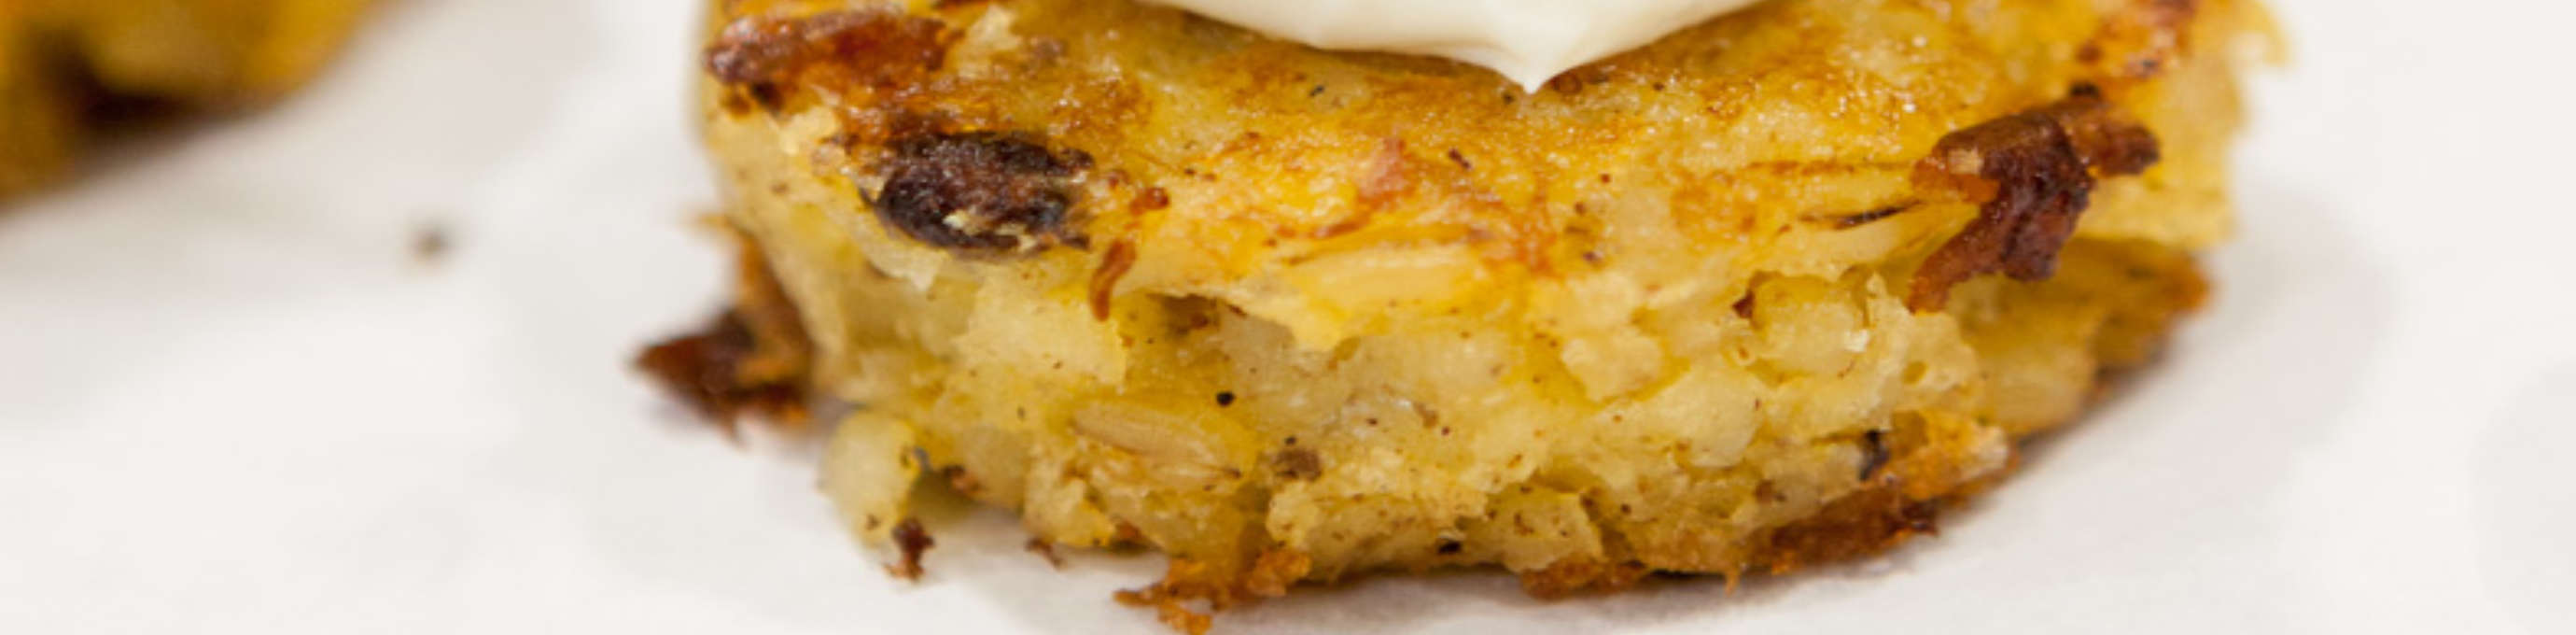 Kartoffeltaler aus Gerstoni Gourmet Gerste mit einem Klecks weißer Paste und Dill, außerdem ein Lachswürfel als Topping aufliegend